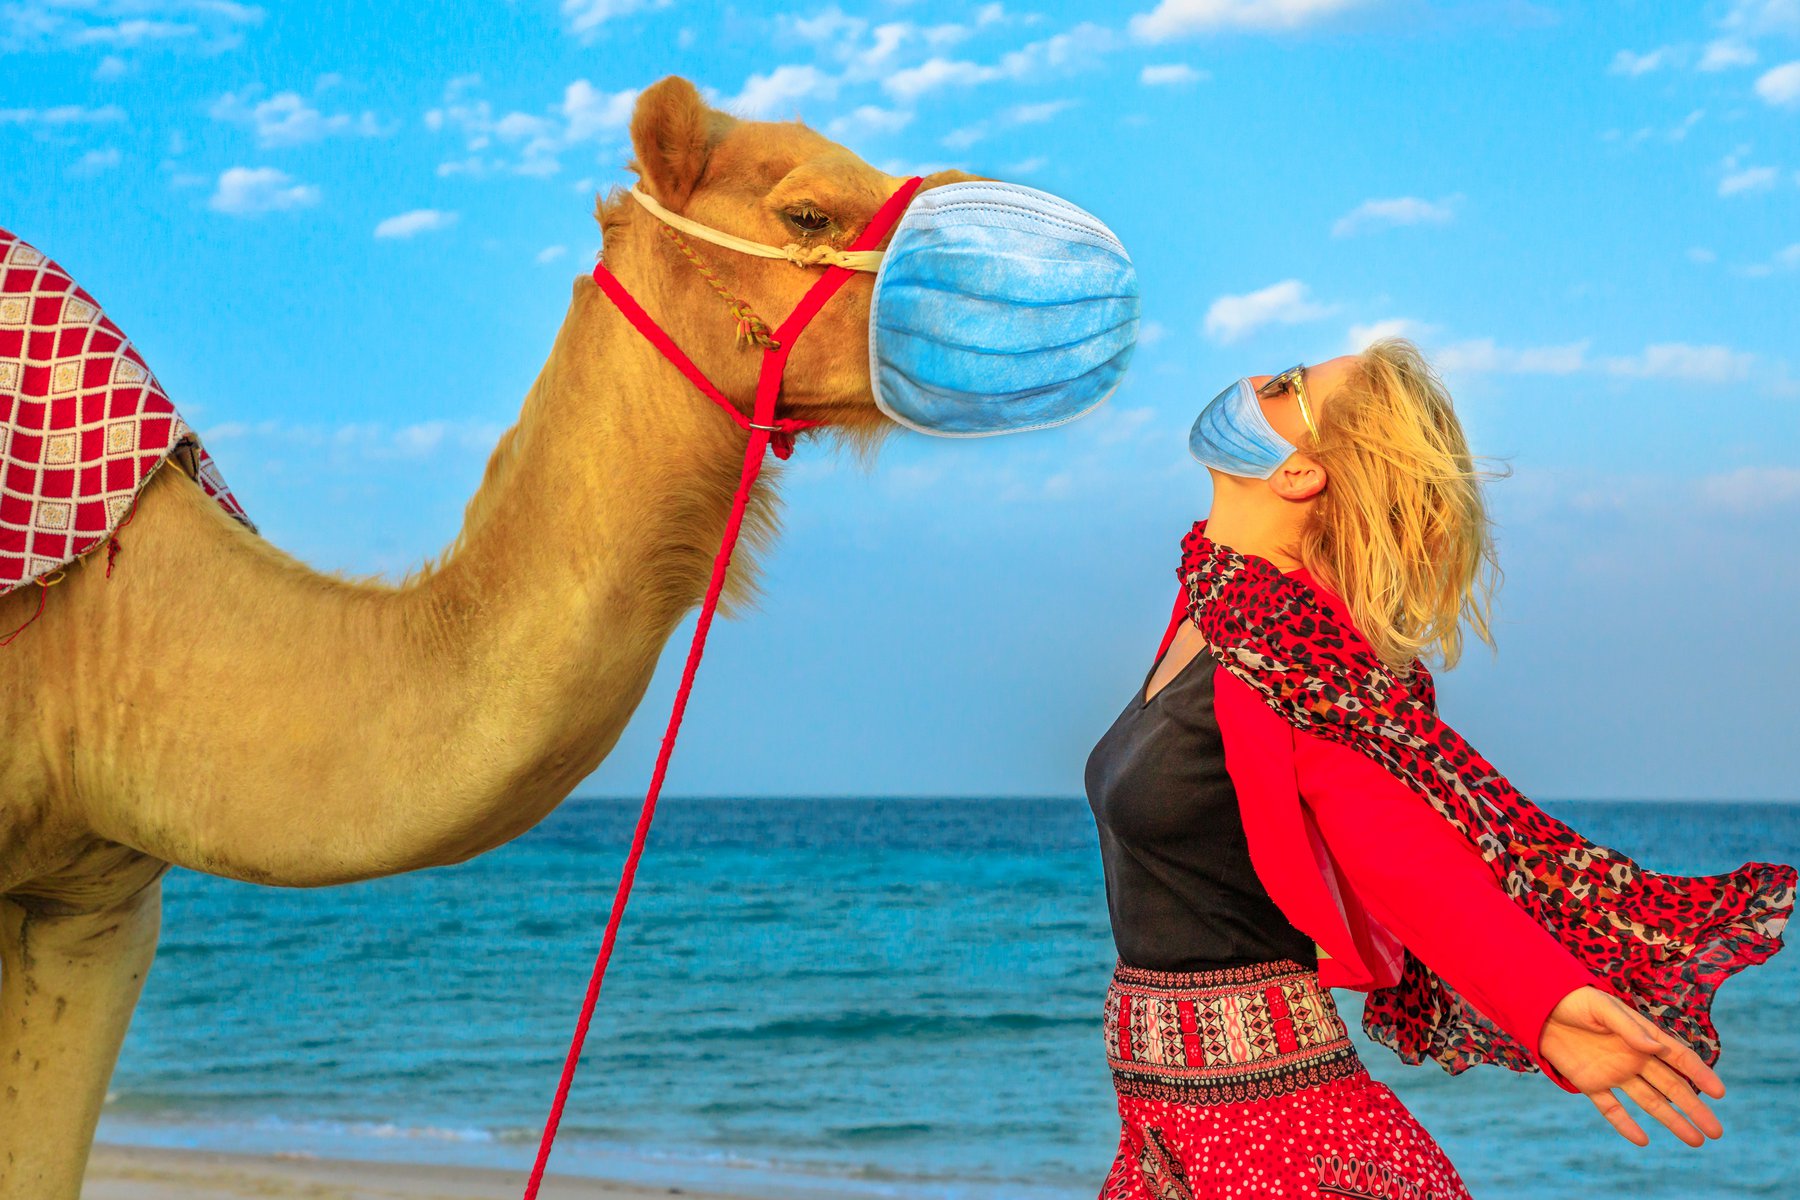 Κατάρ: Οι ειδικοί προειδοποιούν για τον θανατηφόρο «ιό της καμήλας» ενώ ο ένας παίκτης του Μουντιάλ μετά τον άλλον εμφανίζουν συμπτώματα